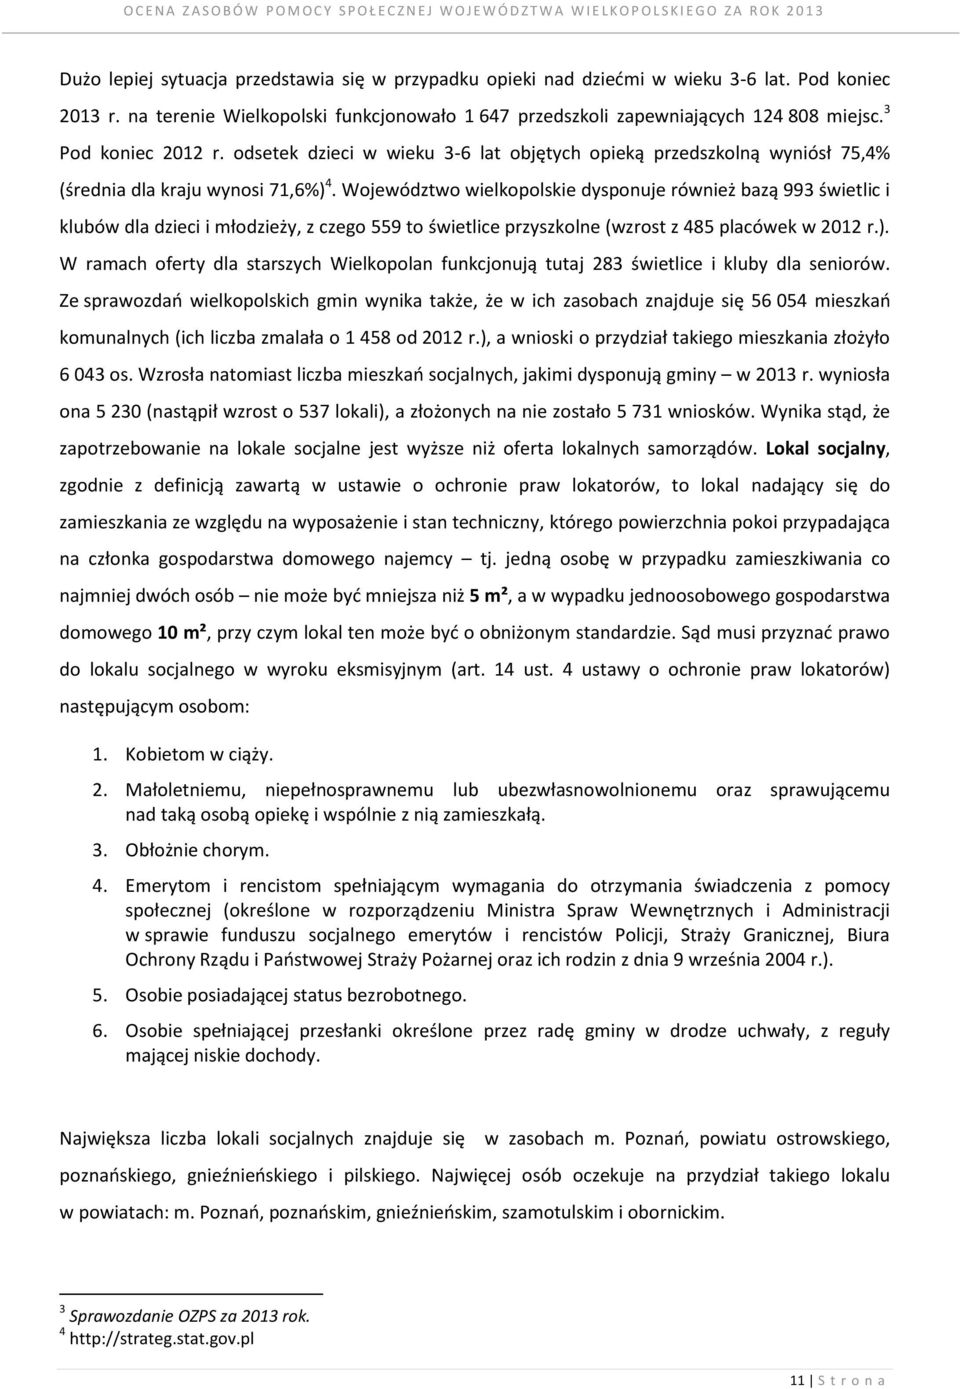 Województwo wielkopolskie dysponuje również bazą 993 świetlic i klubów dla dzieci i młodzieży, z czego 559 to świetlice przyszkolne (wzrost z 485 placówek w 2012 r.).